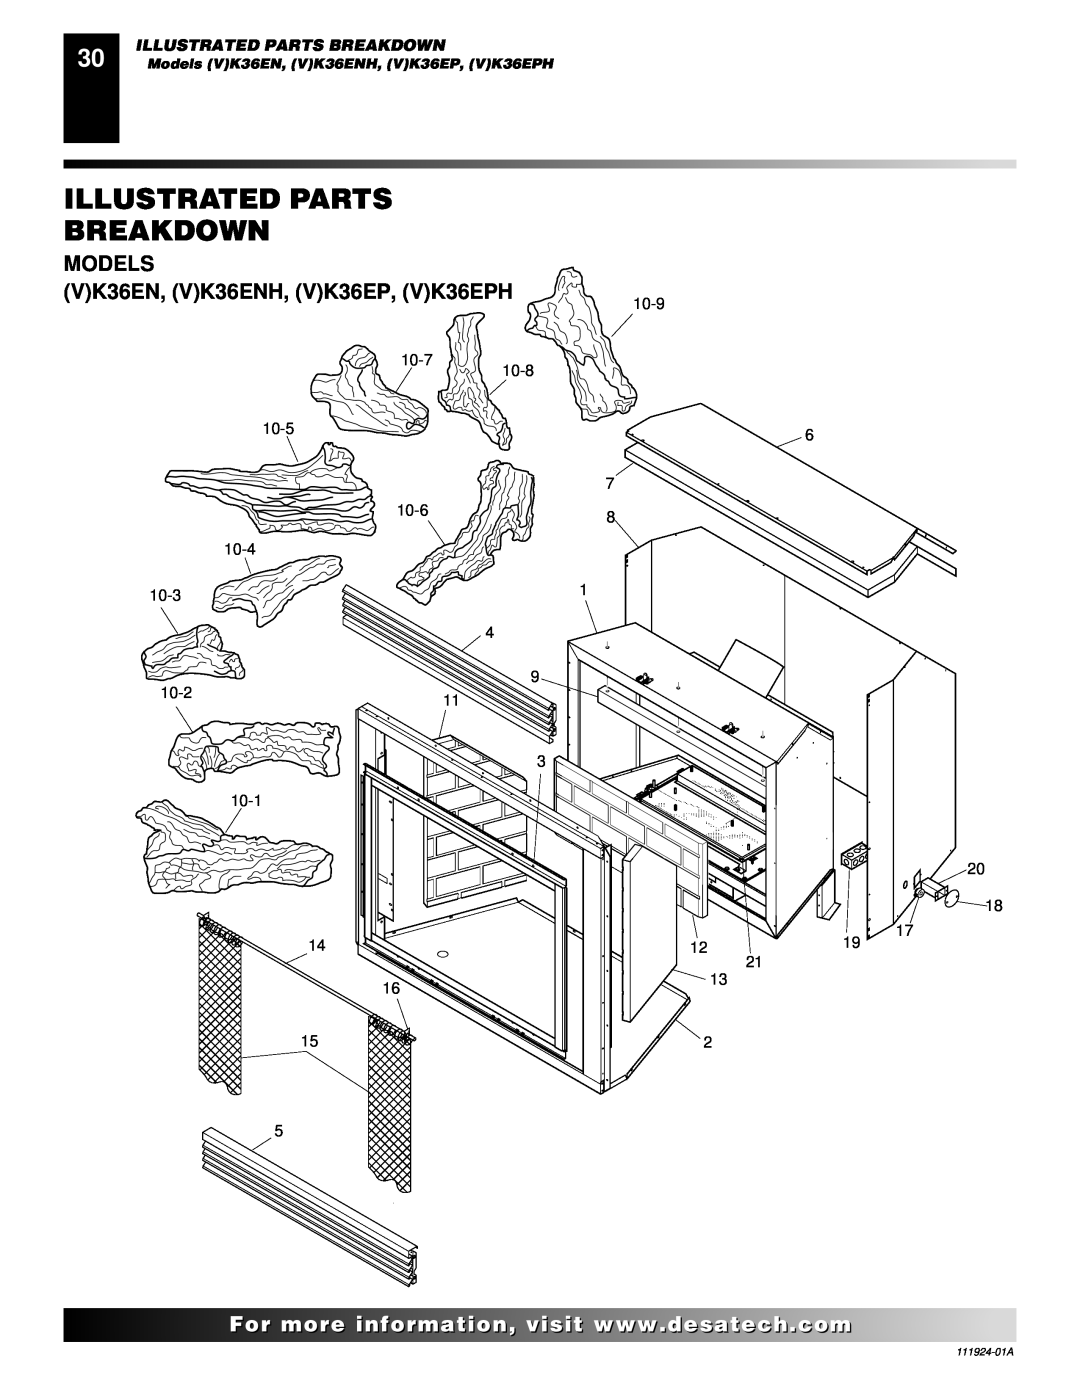 Desa installation manual Illustrated Parts Breakdown, MODELS VK36EN, VK36ENH, VK36EP, VK36EPH 